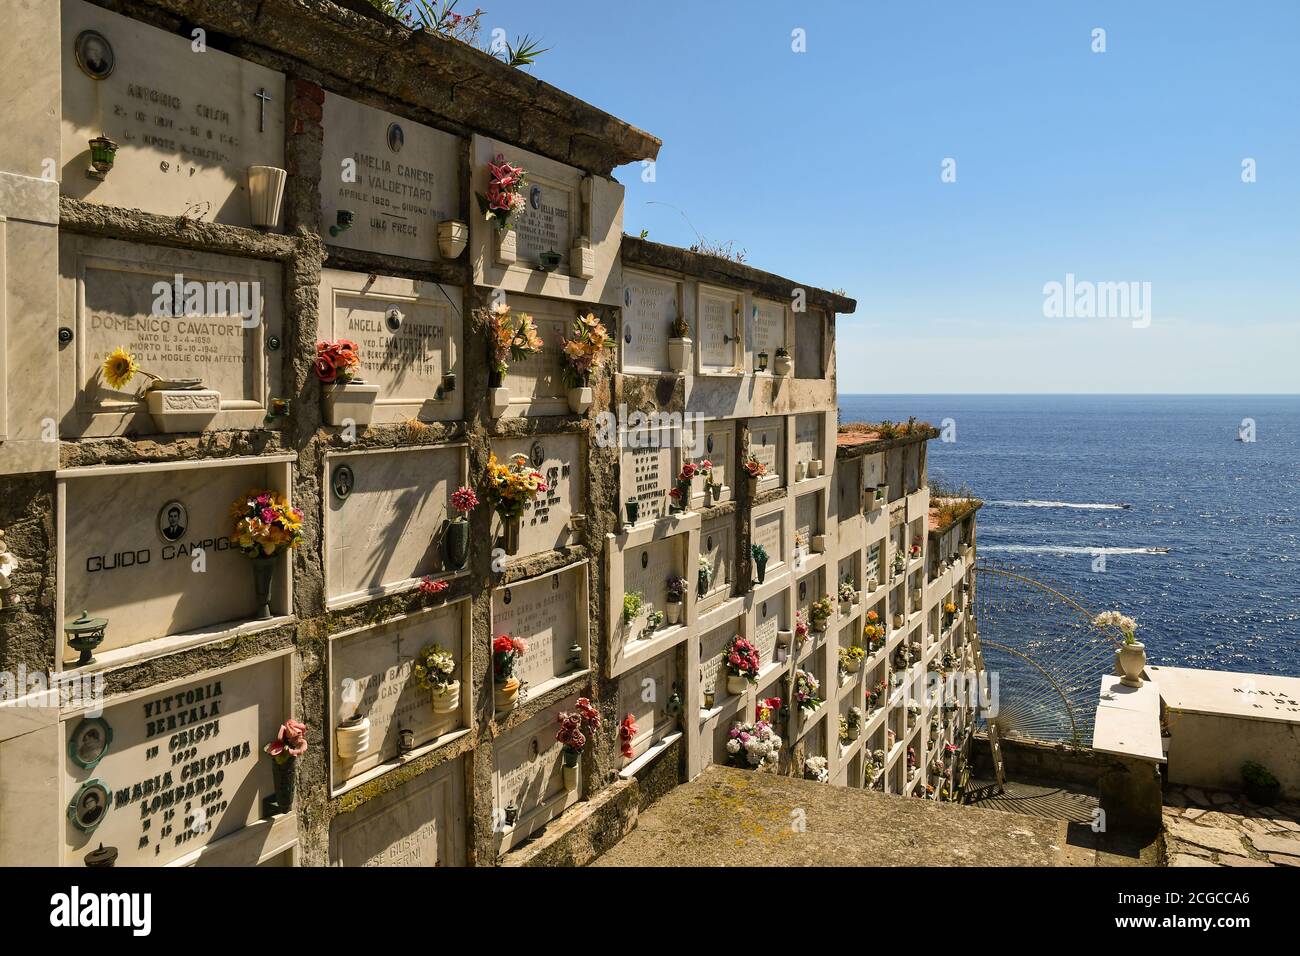 Nicchie nel cimitero che si affaccia sul mare, Porto Venere, la Spezia, Liguria, Italia Foto Stock